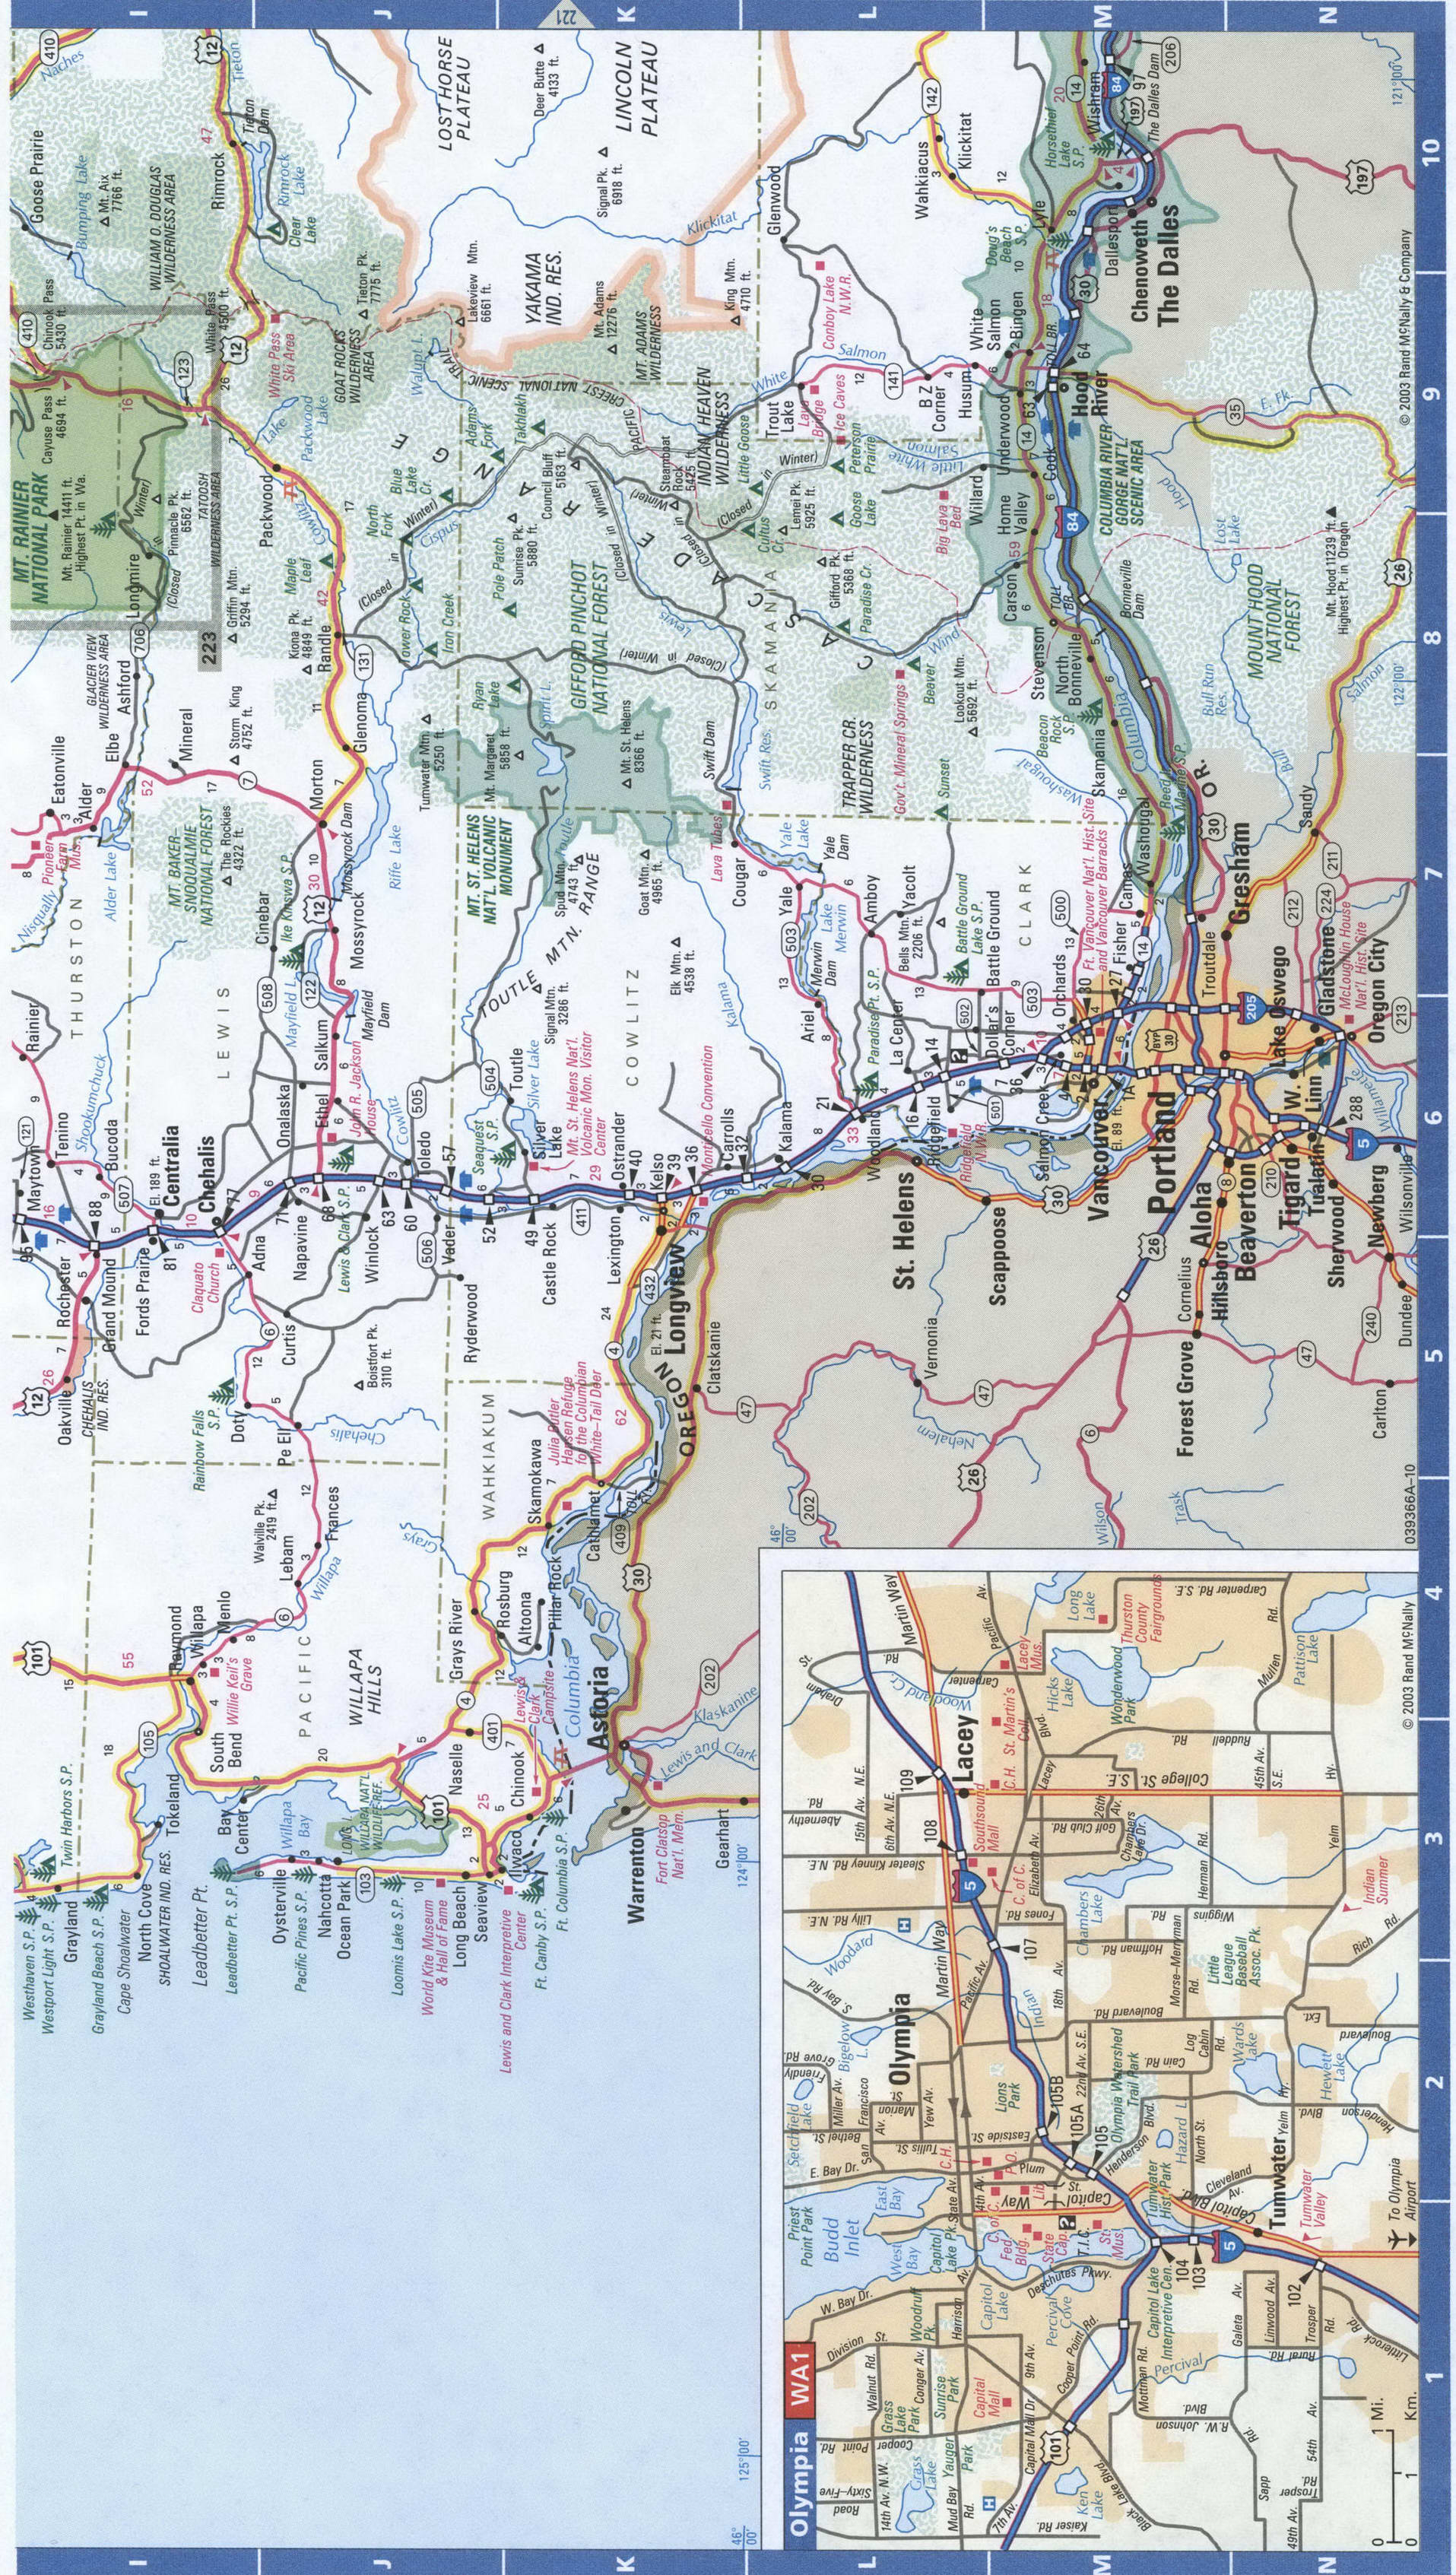 West Washington roads map